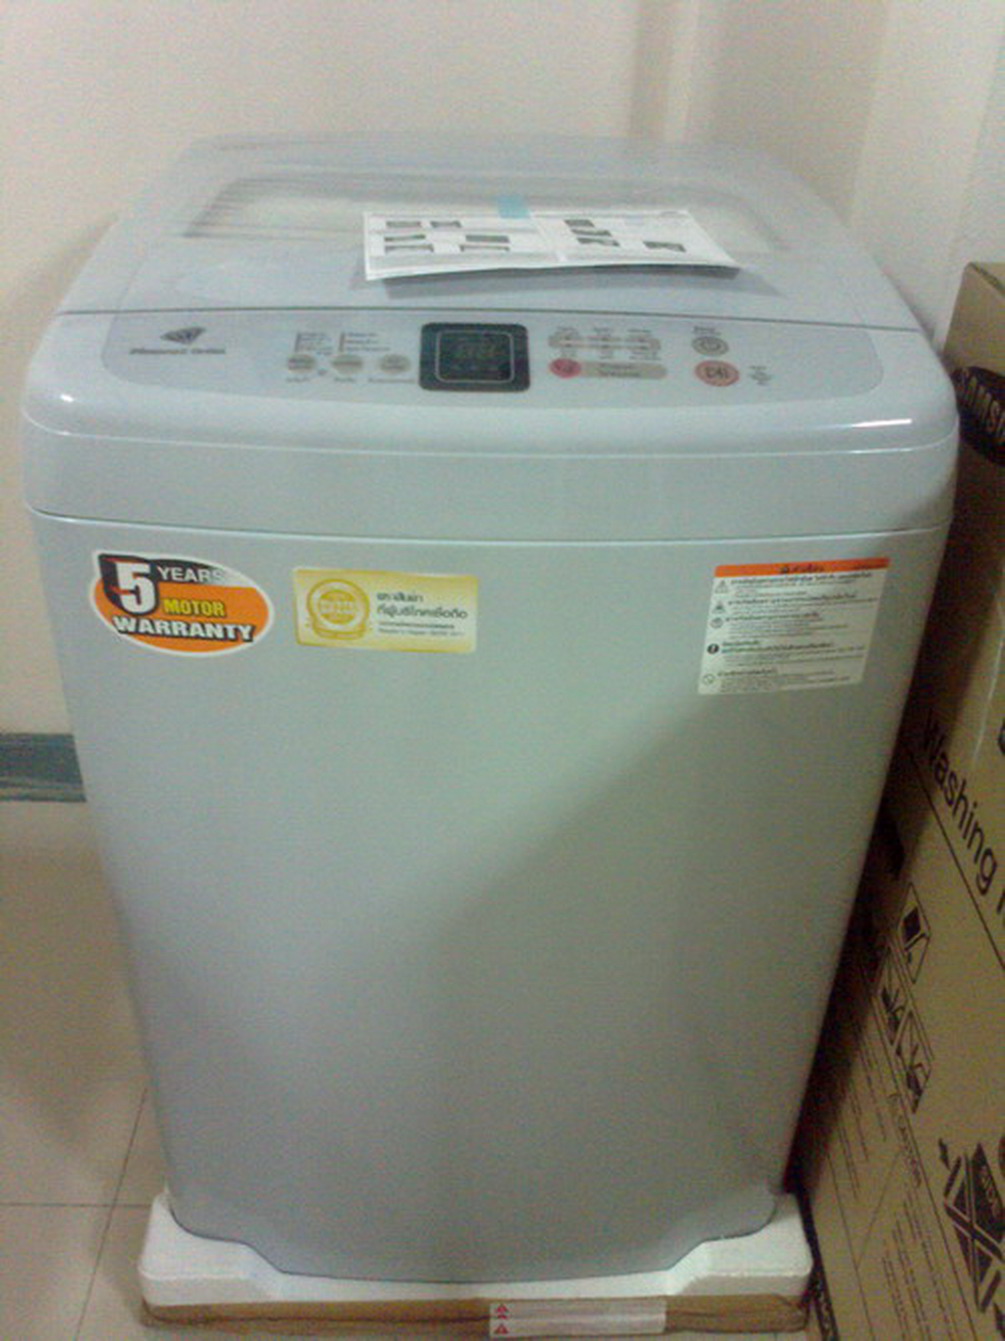 เครื่องซักผ้า lg 6.5 kg ราคา